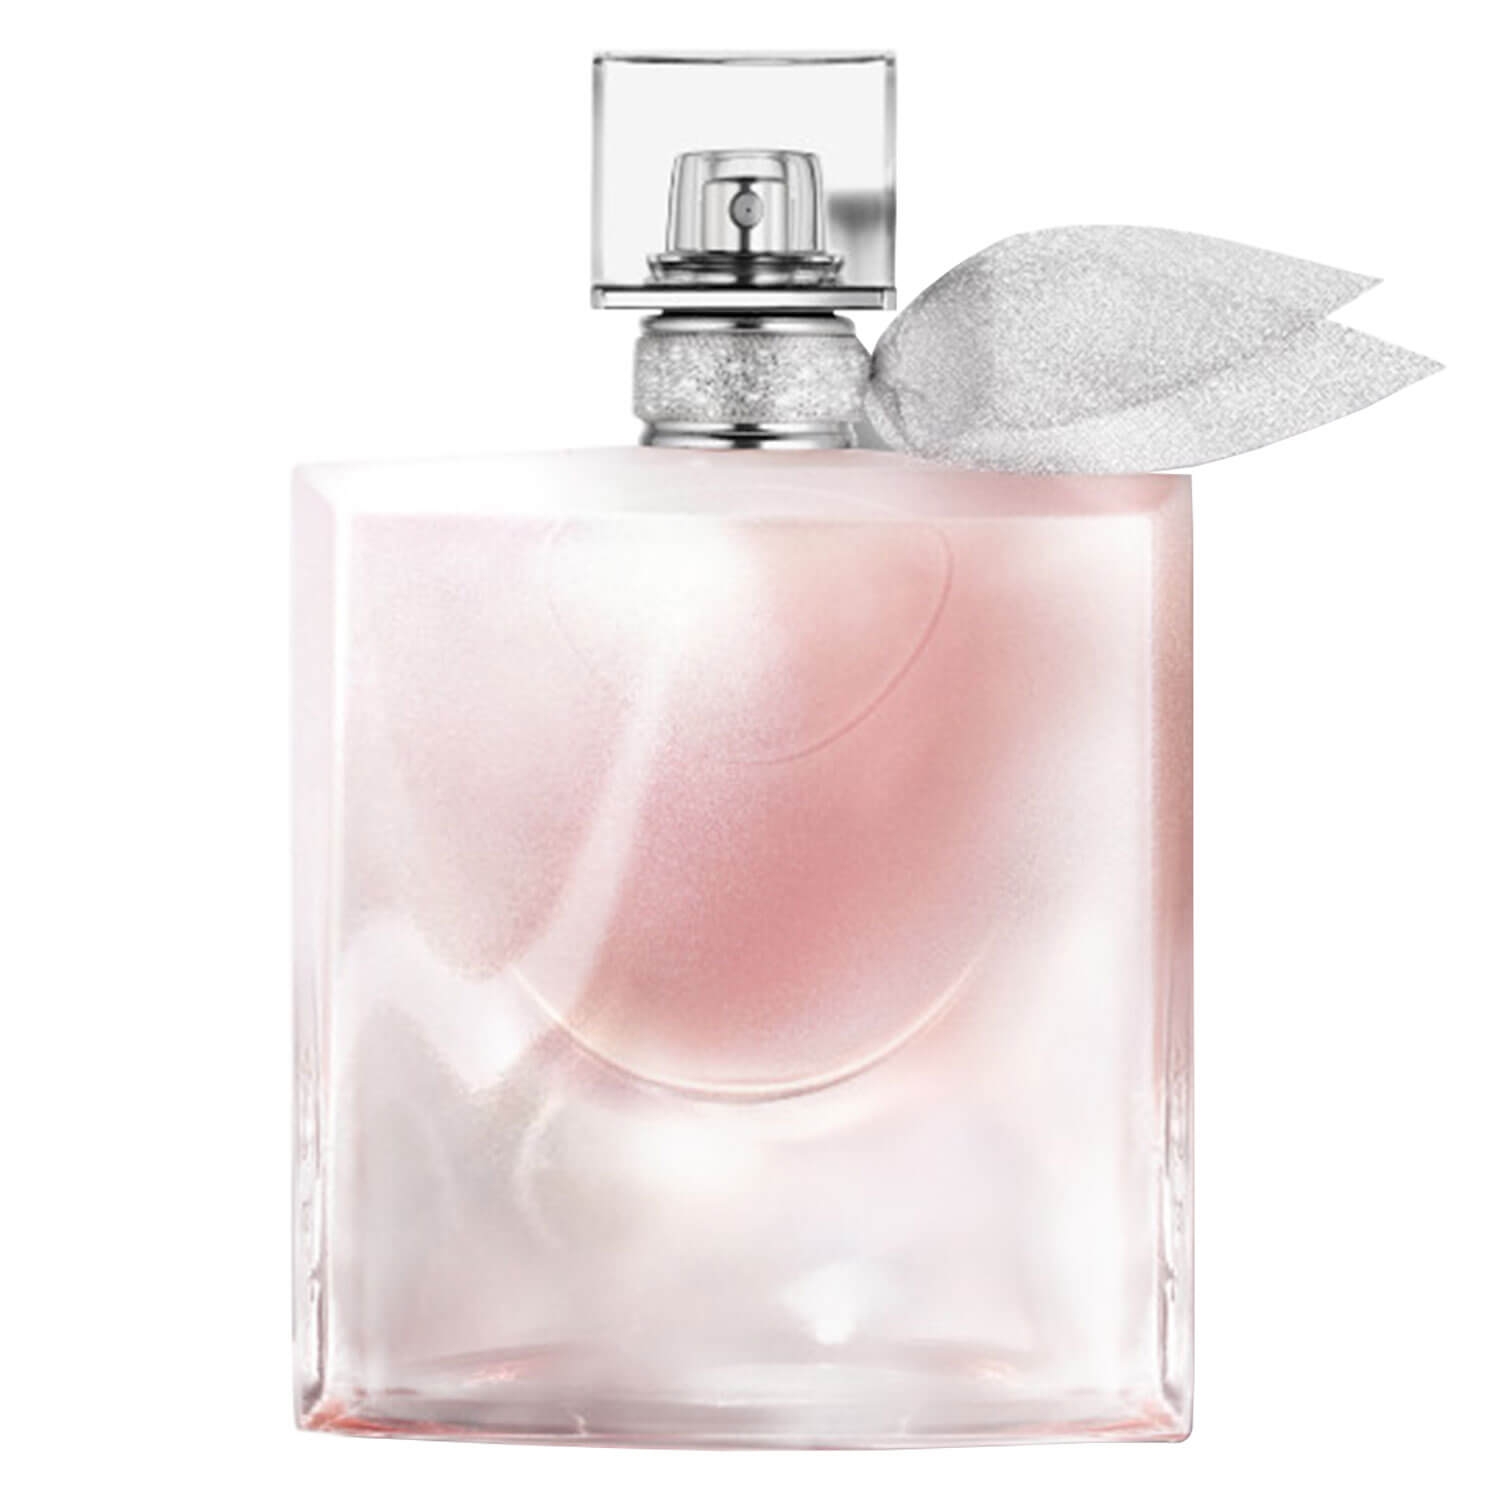 Product image from La Vie est Belle - Blanche Eau de Parfum